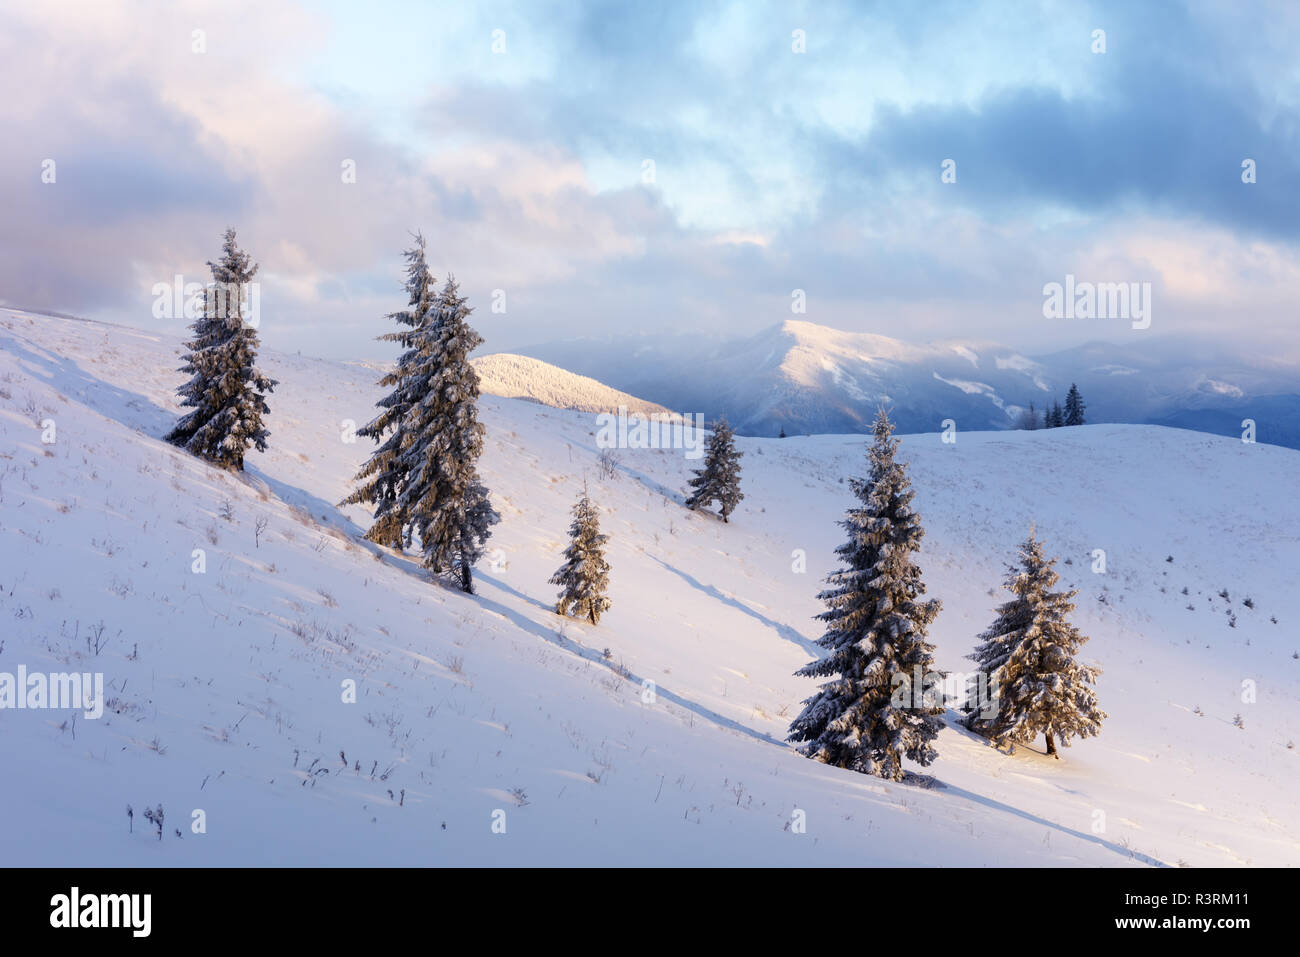 Arancione fantastico paesaggio invernale in montagna innevata incandescente dalla luce del sole. Drammatica scena invernale con alberi innevati. Vacanze di Natale concetto. Foto Stock